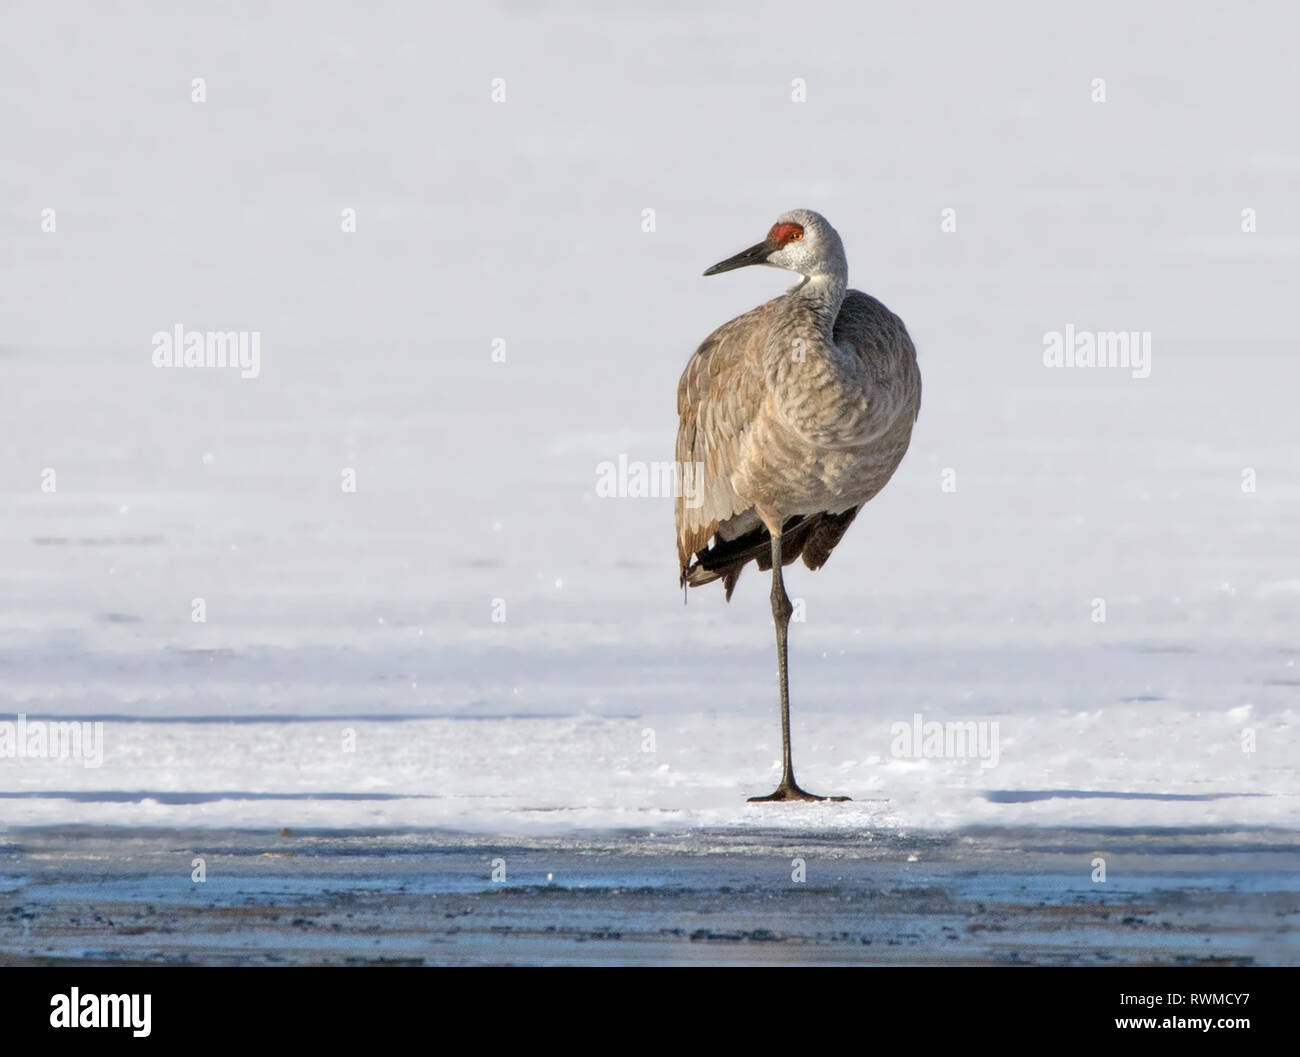 A Sandhill Crane,  Grus canadensis, standing on Wascana Lake in winter, in Regina Saskatchewan Stock Photo